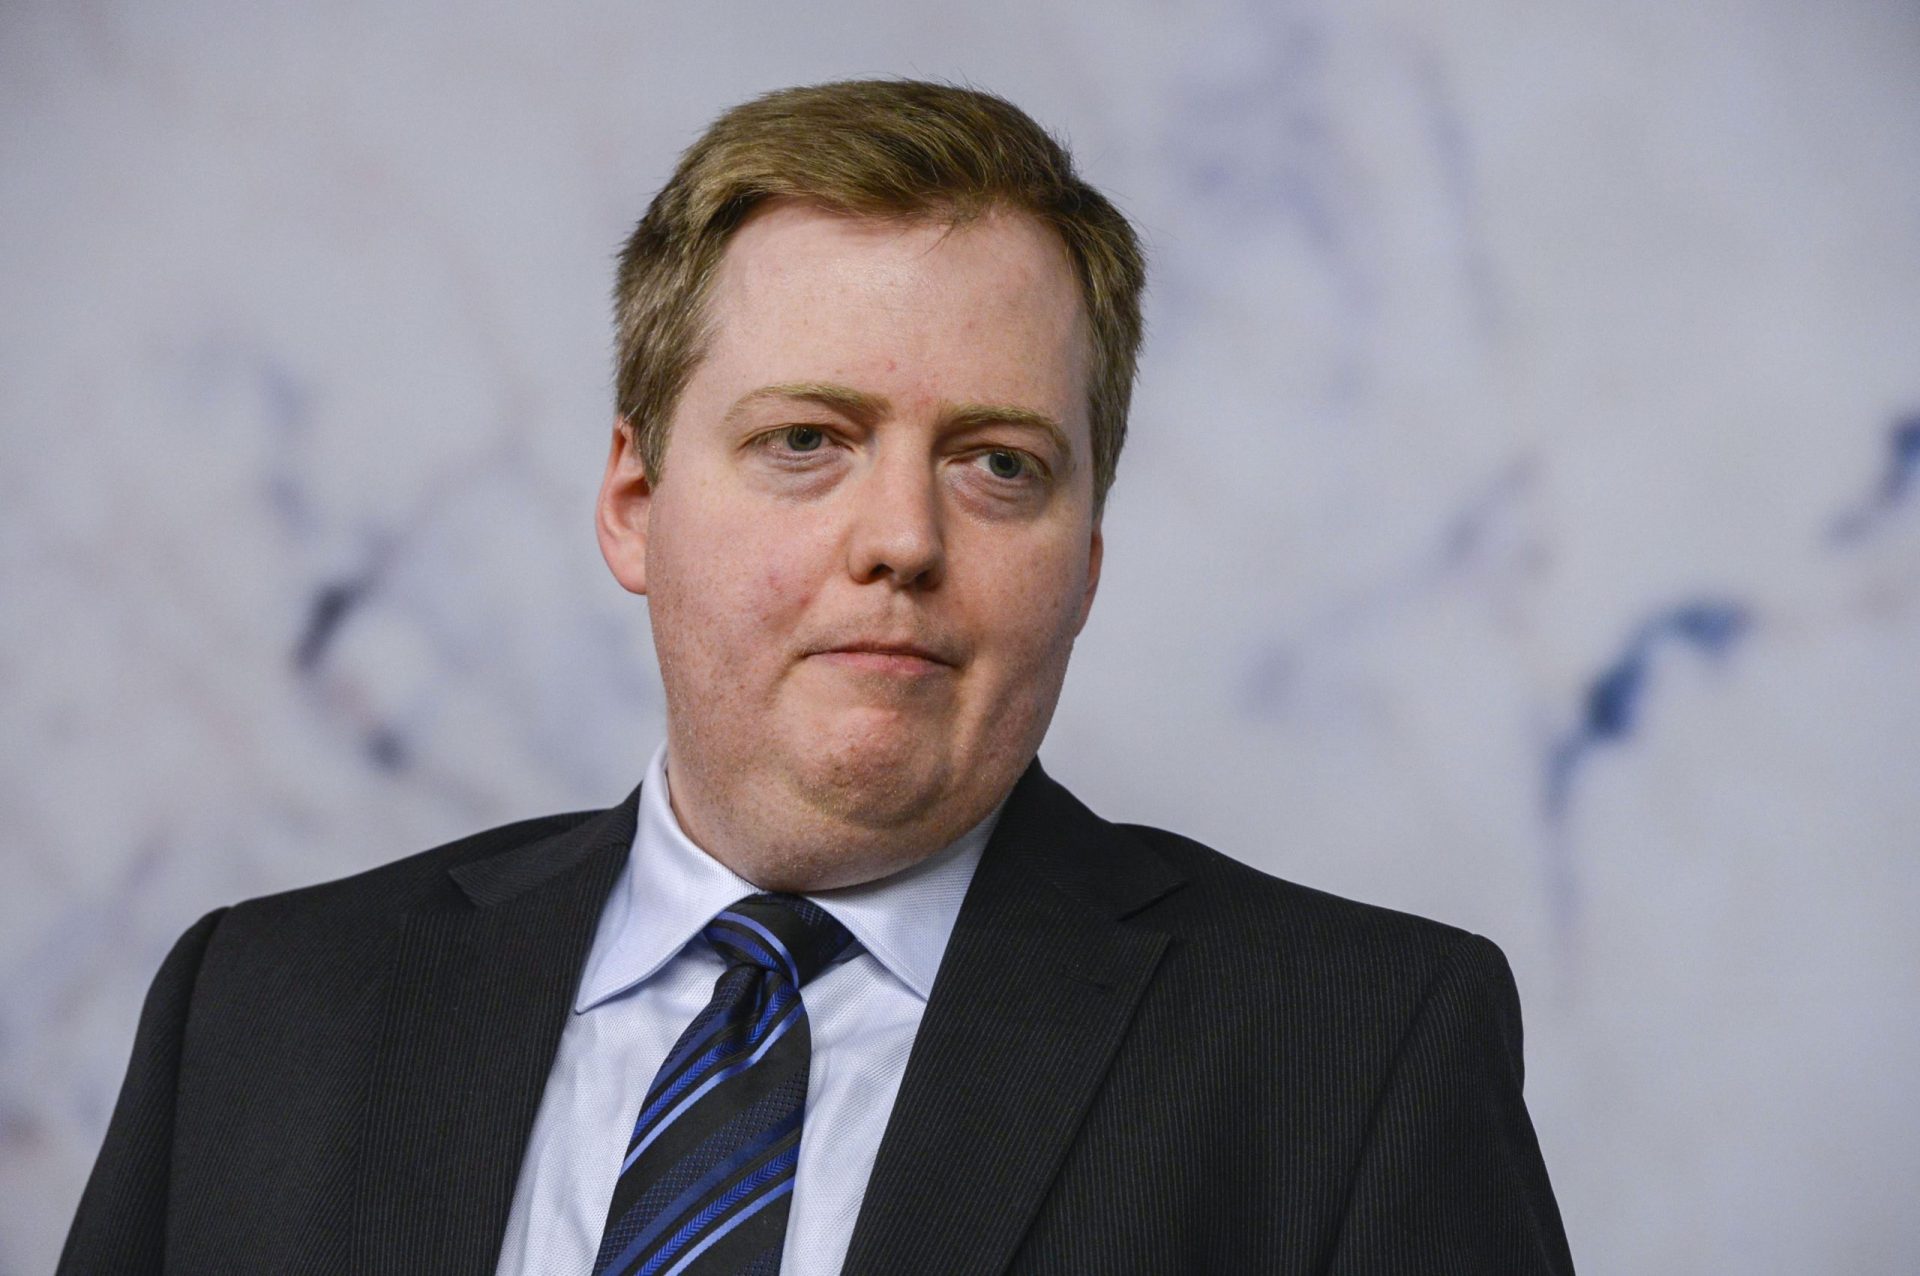 Panamá Papers: Presidente islandês recusa dissolução do parlamento após pedido do primeiro-ministro